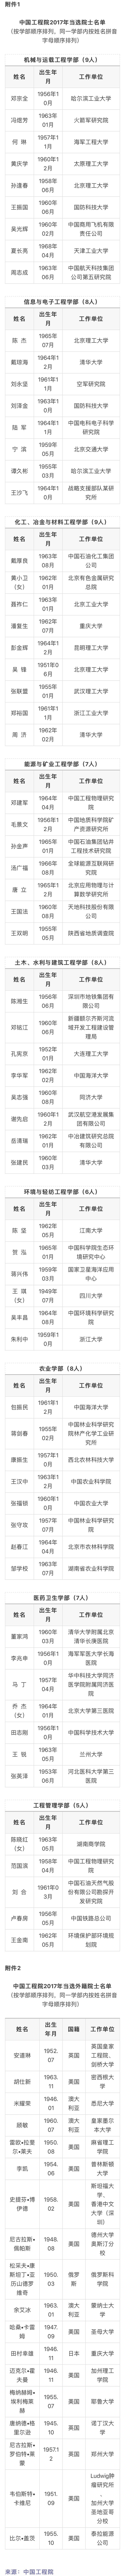 中国工程院2017年院士增选结果公布